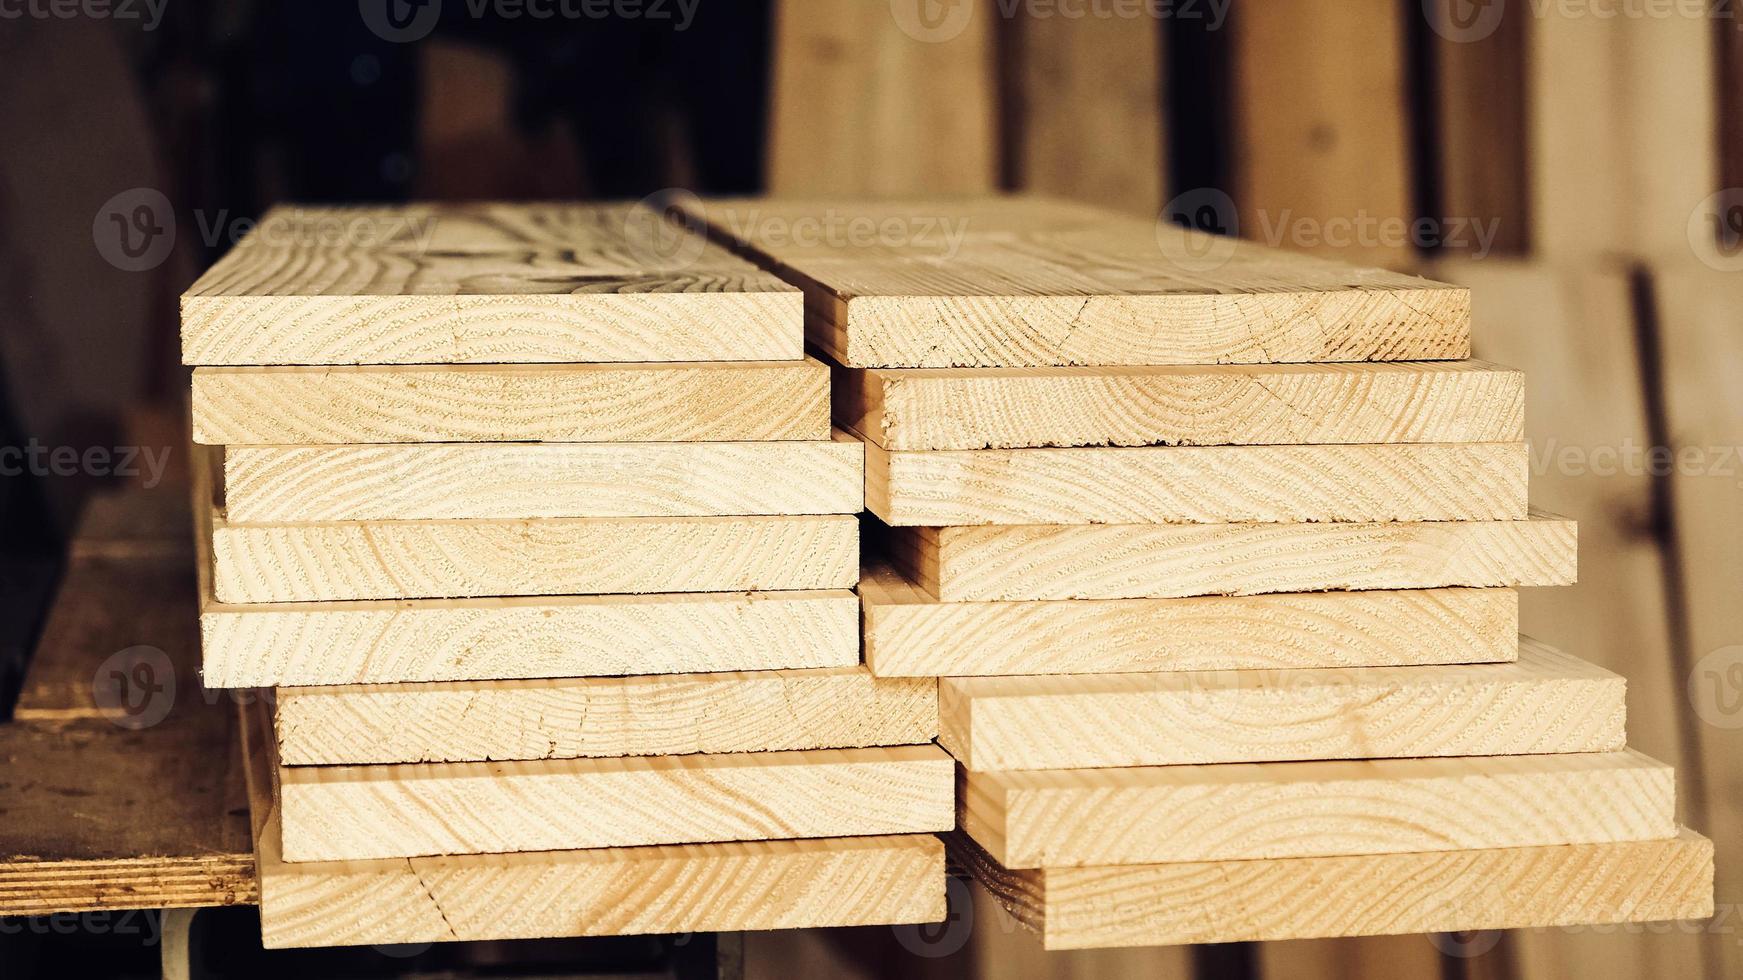 tableros de carpintería de madera apilados de madera natural en una industria de carpintería foto